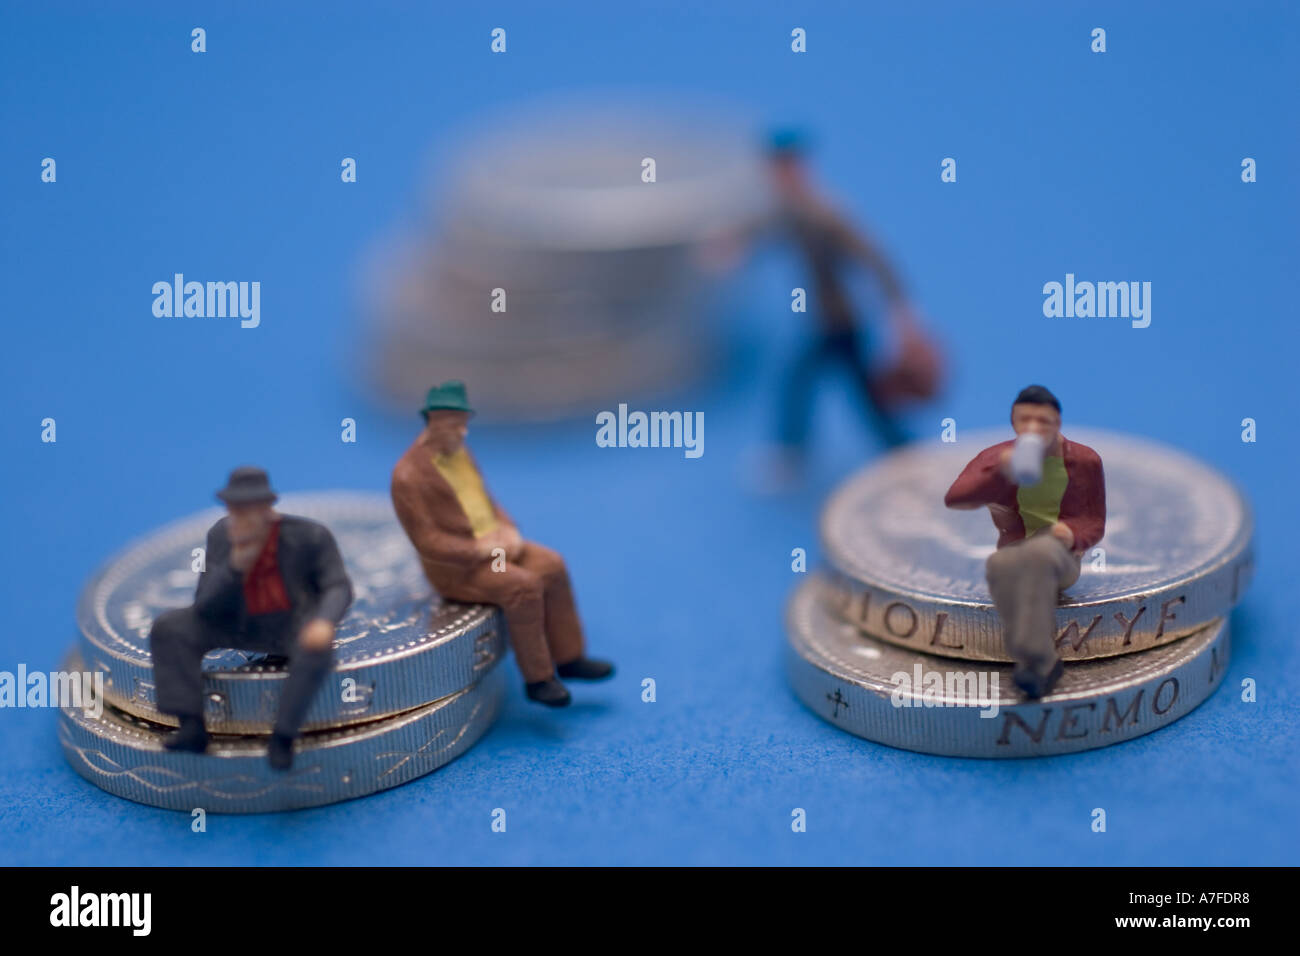 Pièces d'une livre sterling de pièce de monnaie du Royaume-Uni avec des modèles miniatures de gens assis sur les pièces Banque D'Images